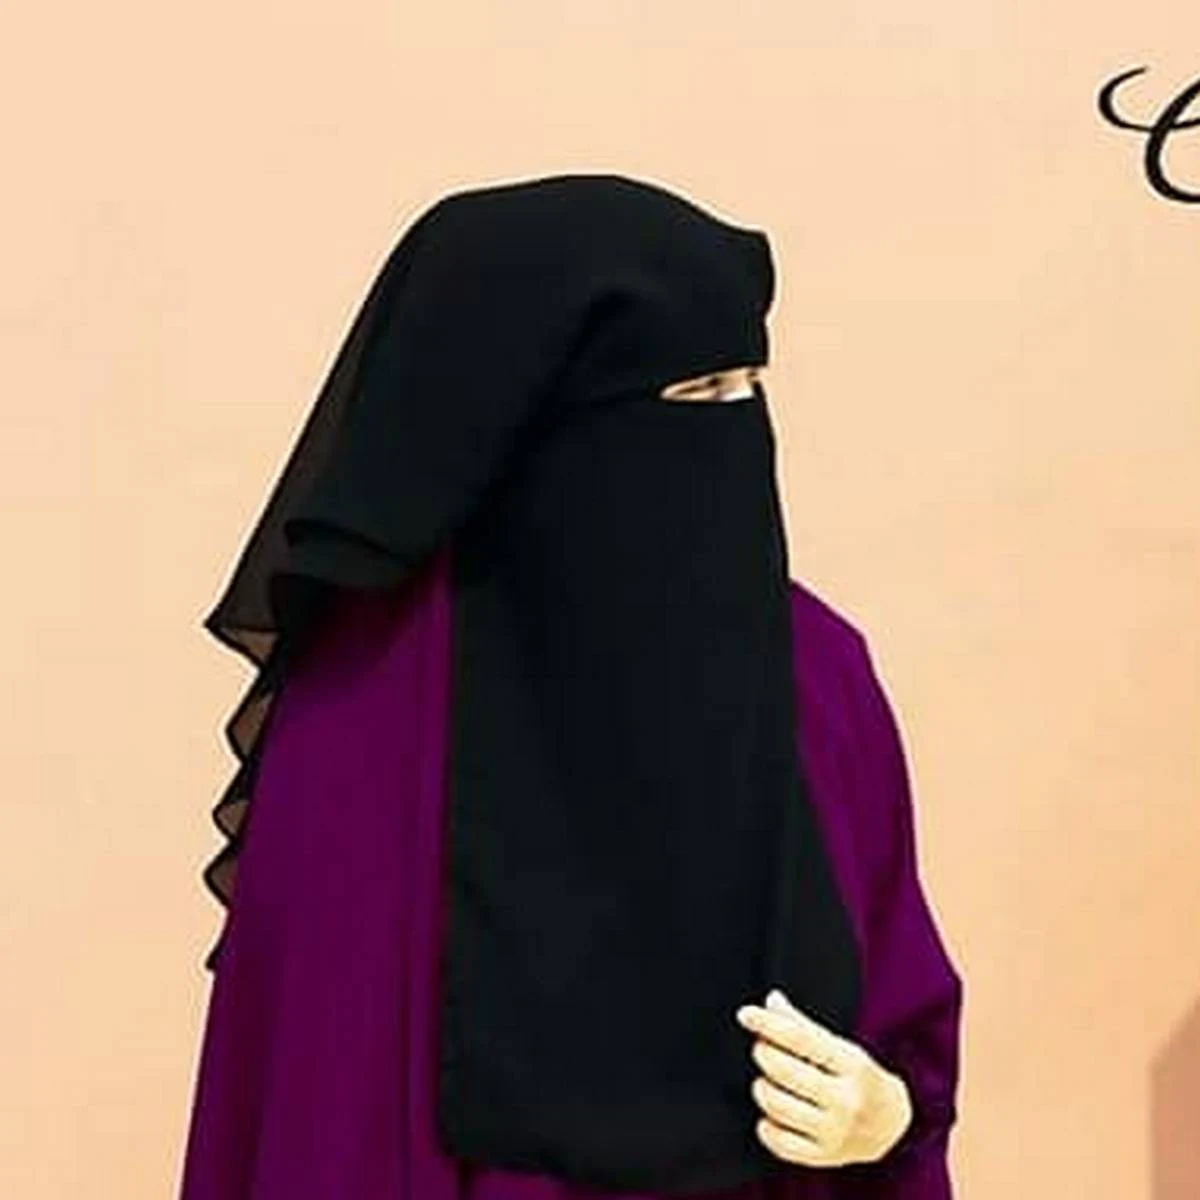 Hoodie Niqab Niqab Design Hoodie Niqab Design Niqab Hijab - nikab design